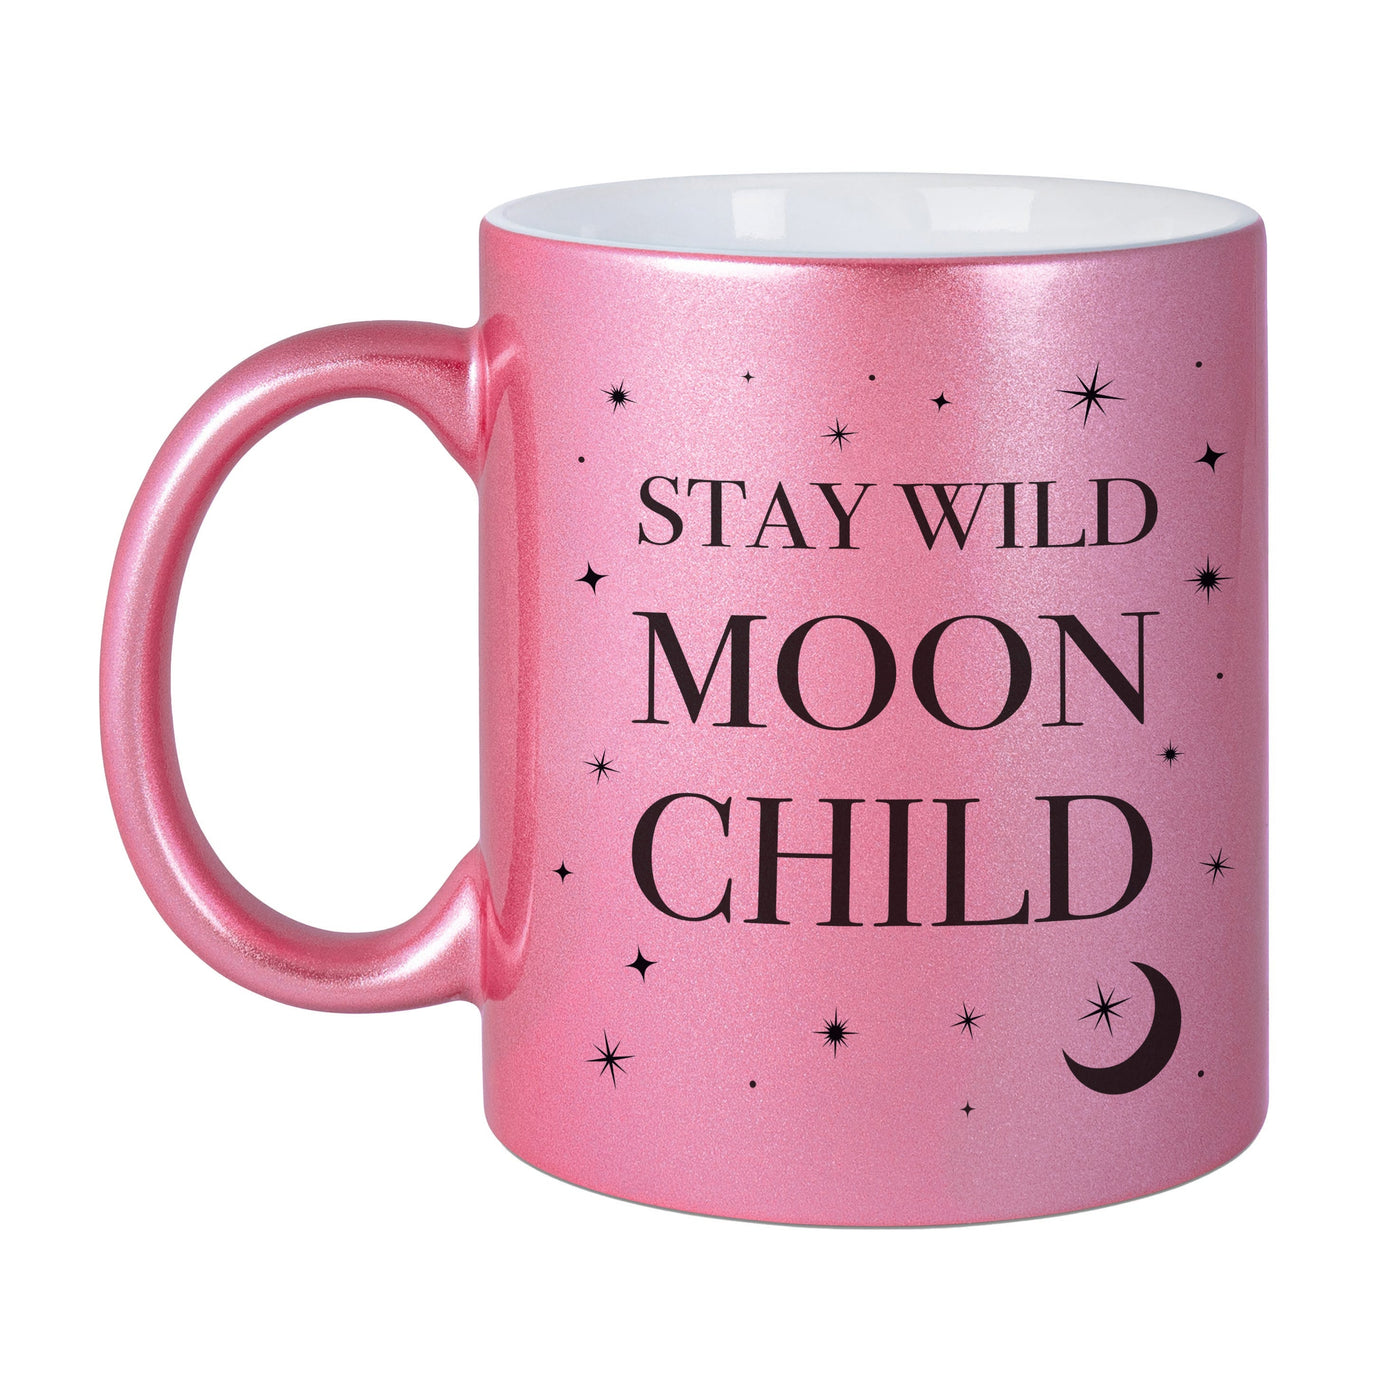 Bild: Tasse - Stay wild Moon Child - Metallictasse Geschenkidee